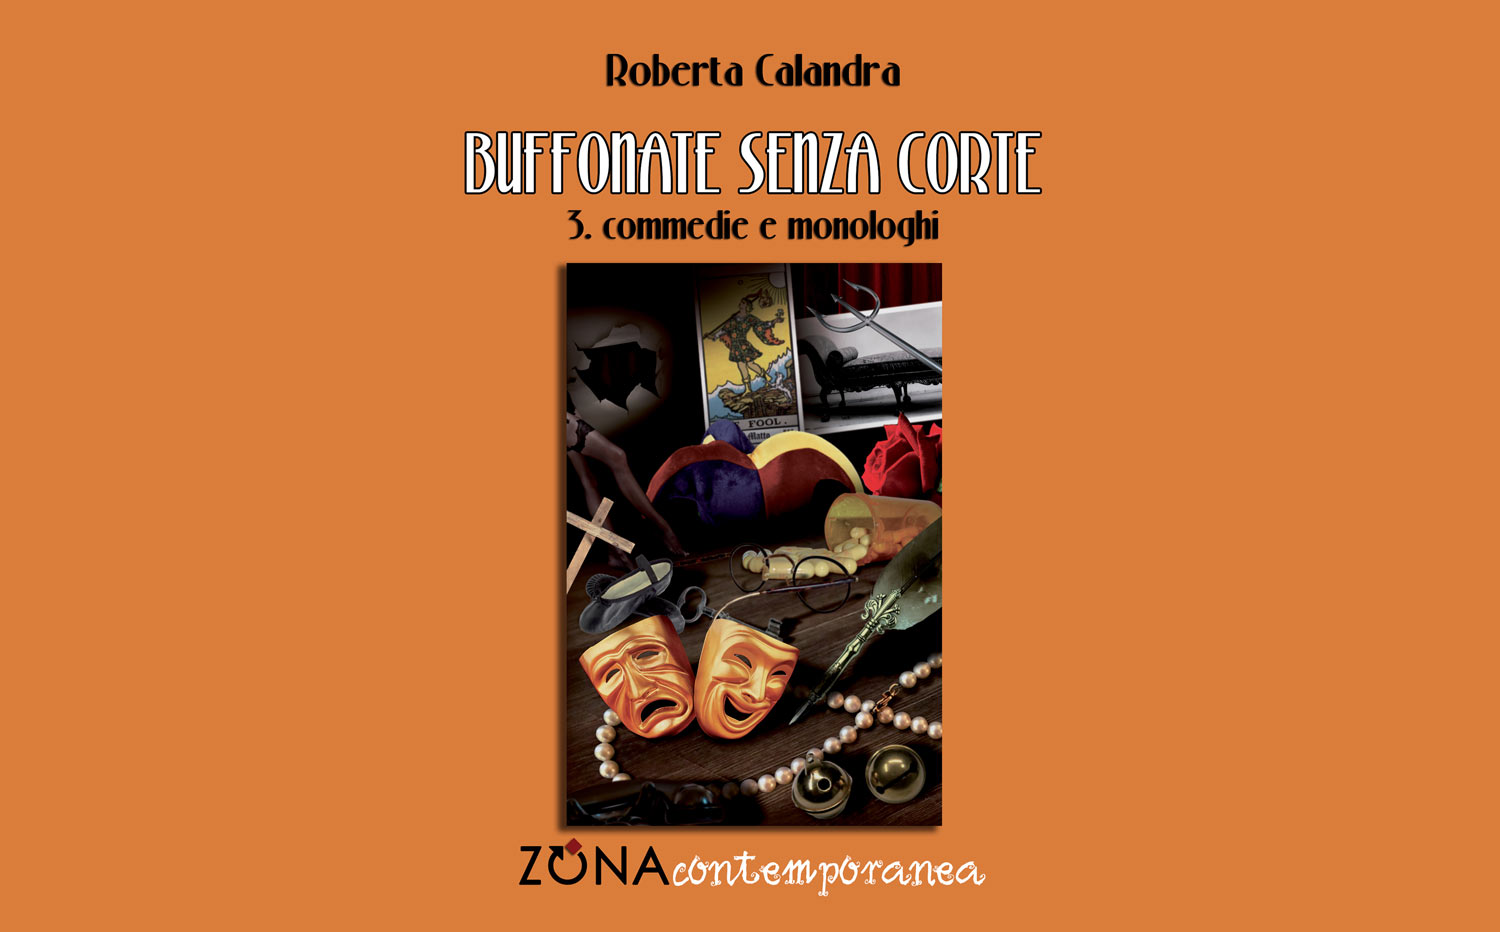 La copertina del libro di Roberta Calandra Buffonate senza corte 3. Commedie e monologhi